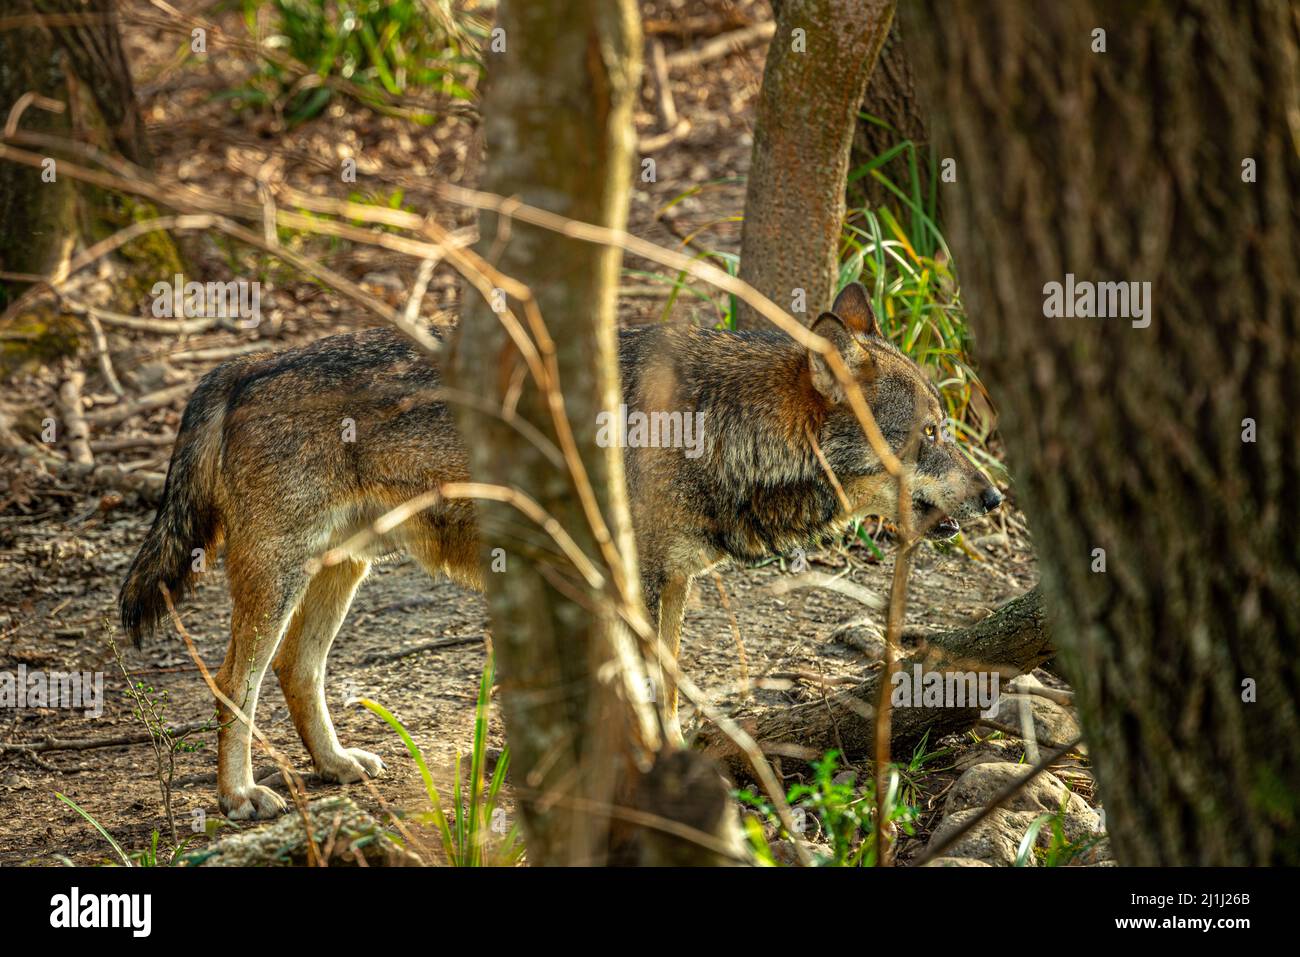 Le loup Apennine dans la réserve naturelle de la réserve régionale Lago di Penne. Oasis WWF, Penne, province de Pescara, Abruzzes, Italie, Europe Banque D'Images